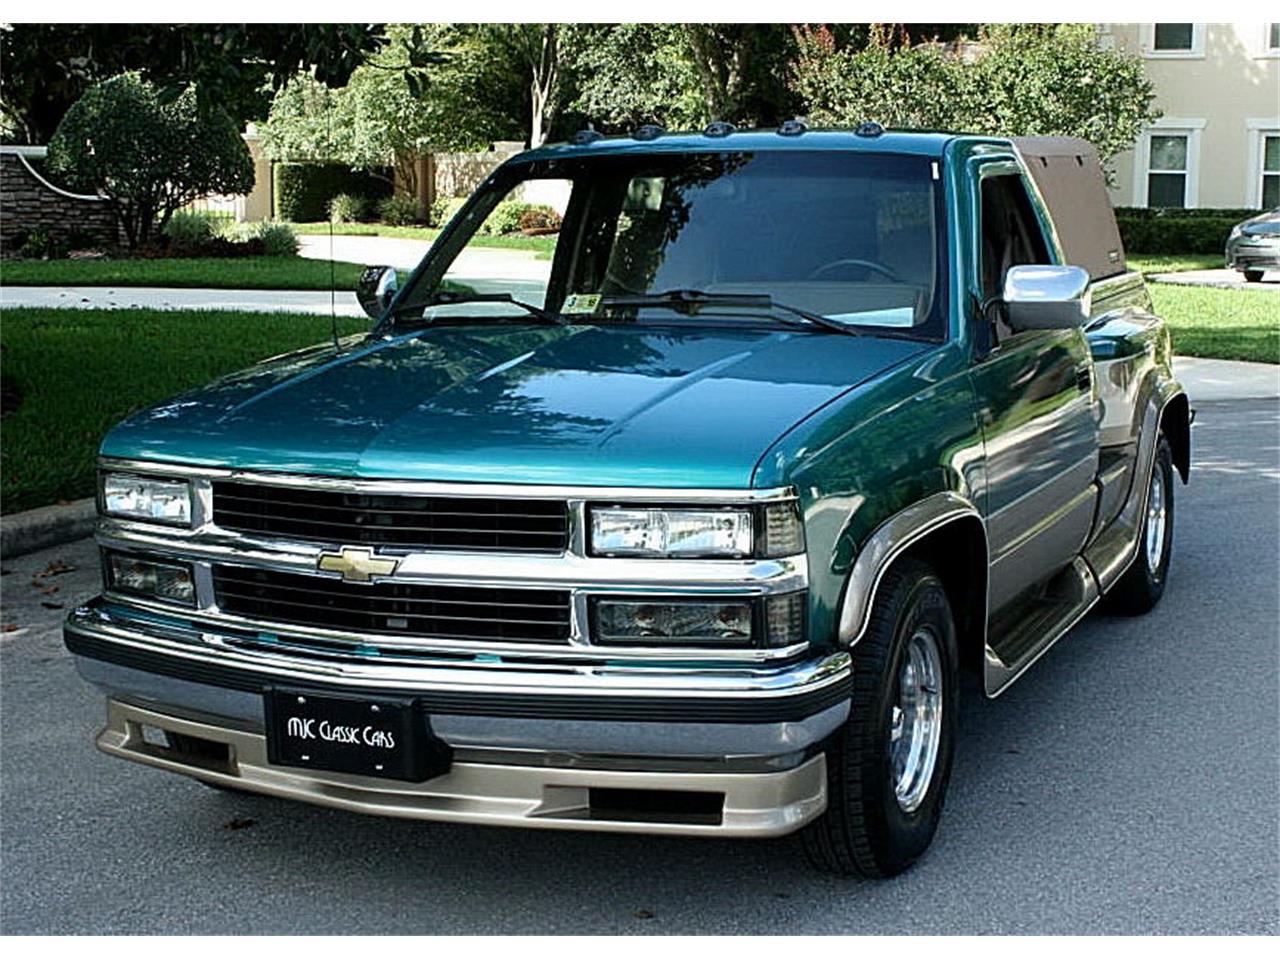 For Sale: 1994 Chevrolet Silverado in Lakeland, Florida.